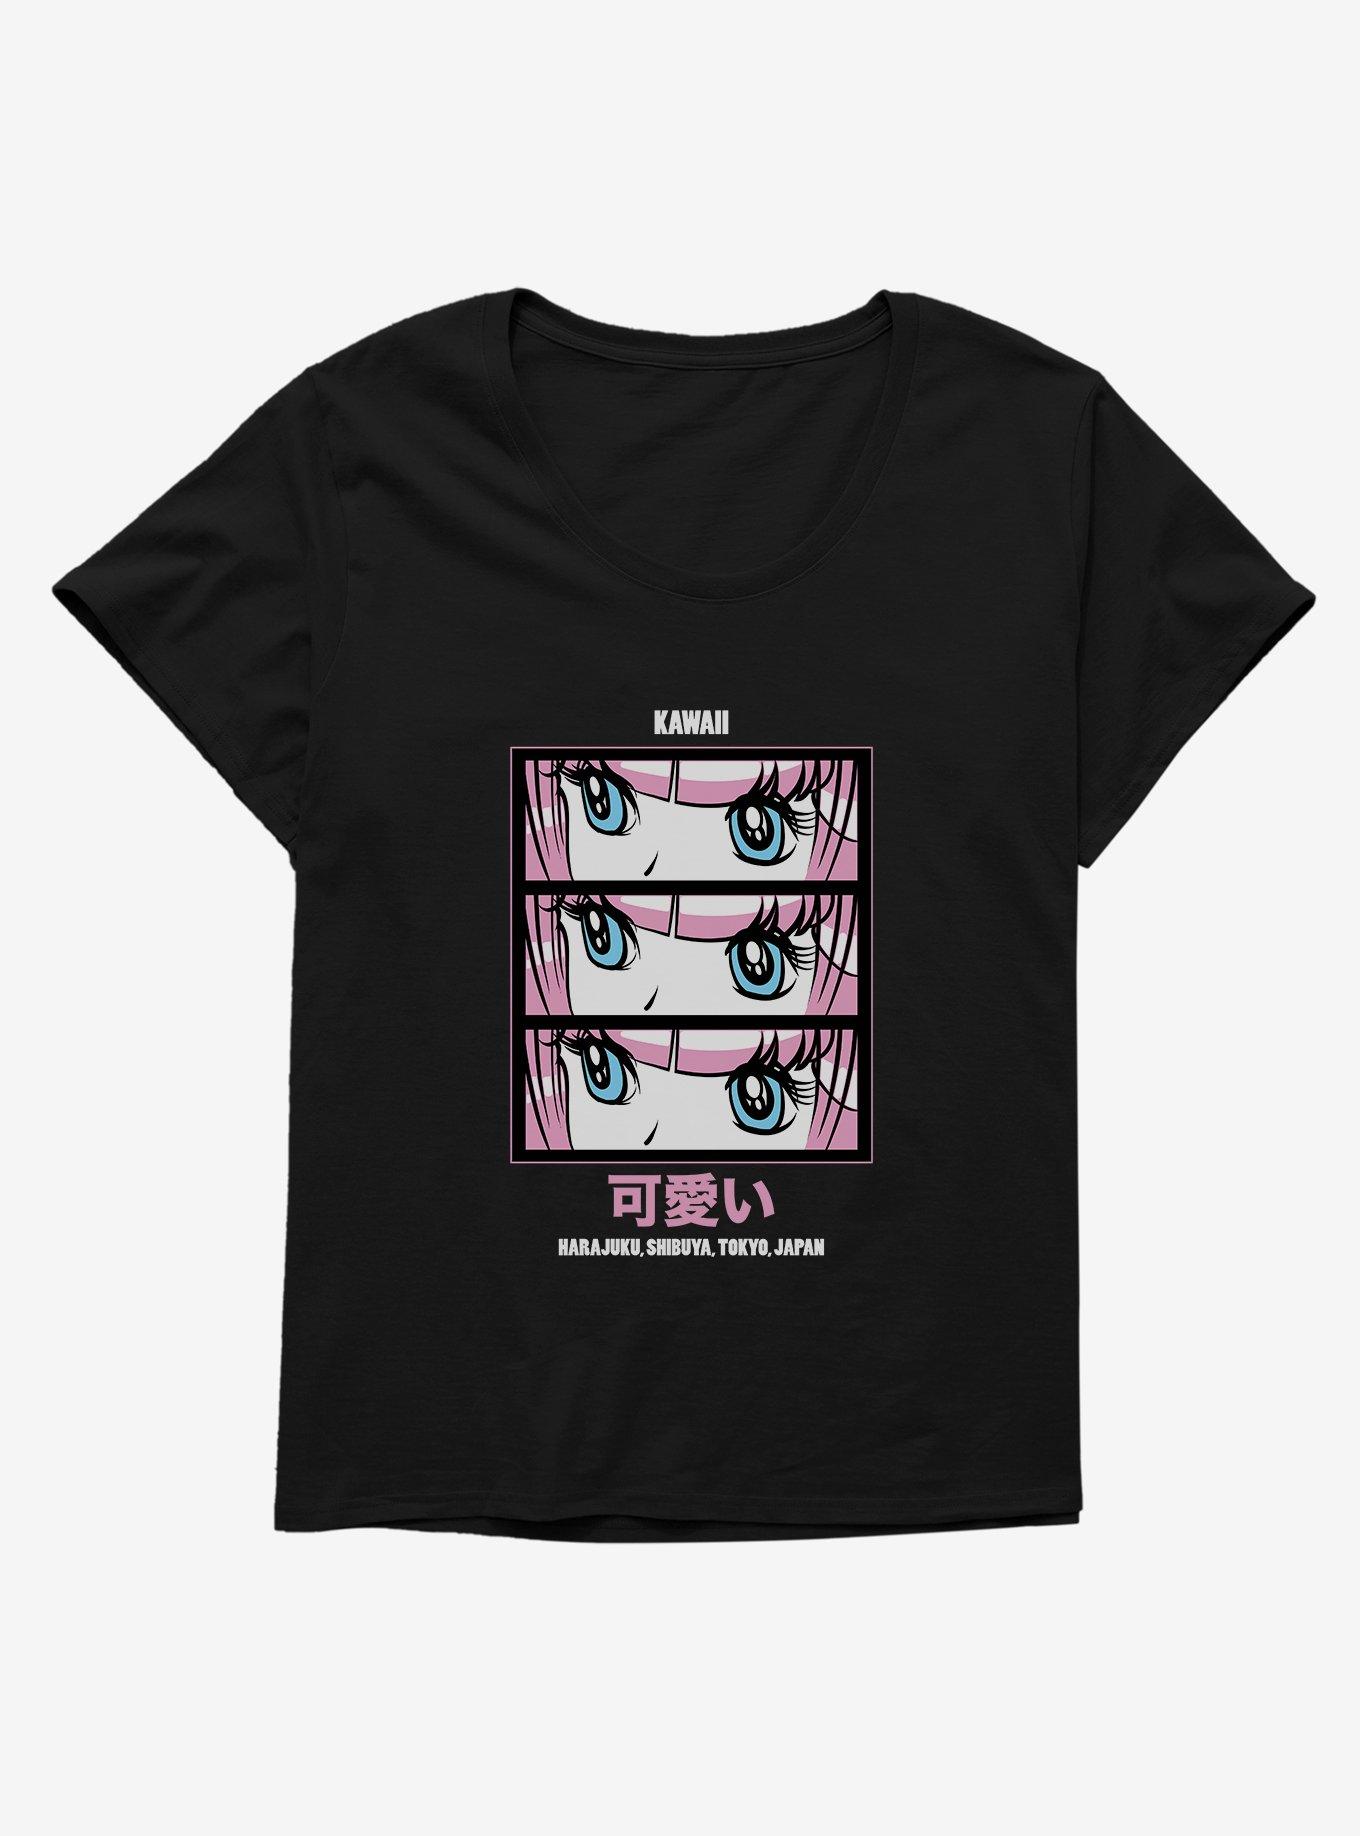 Anime Girl Kawaii Girls T-Shirt Plus